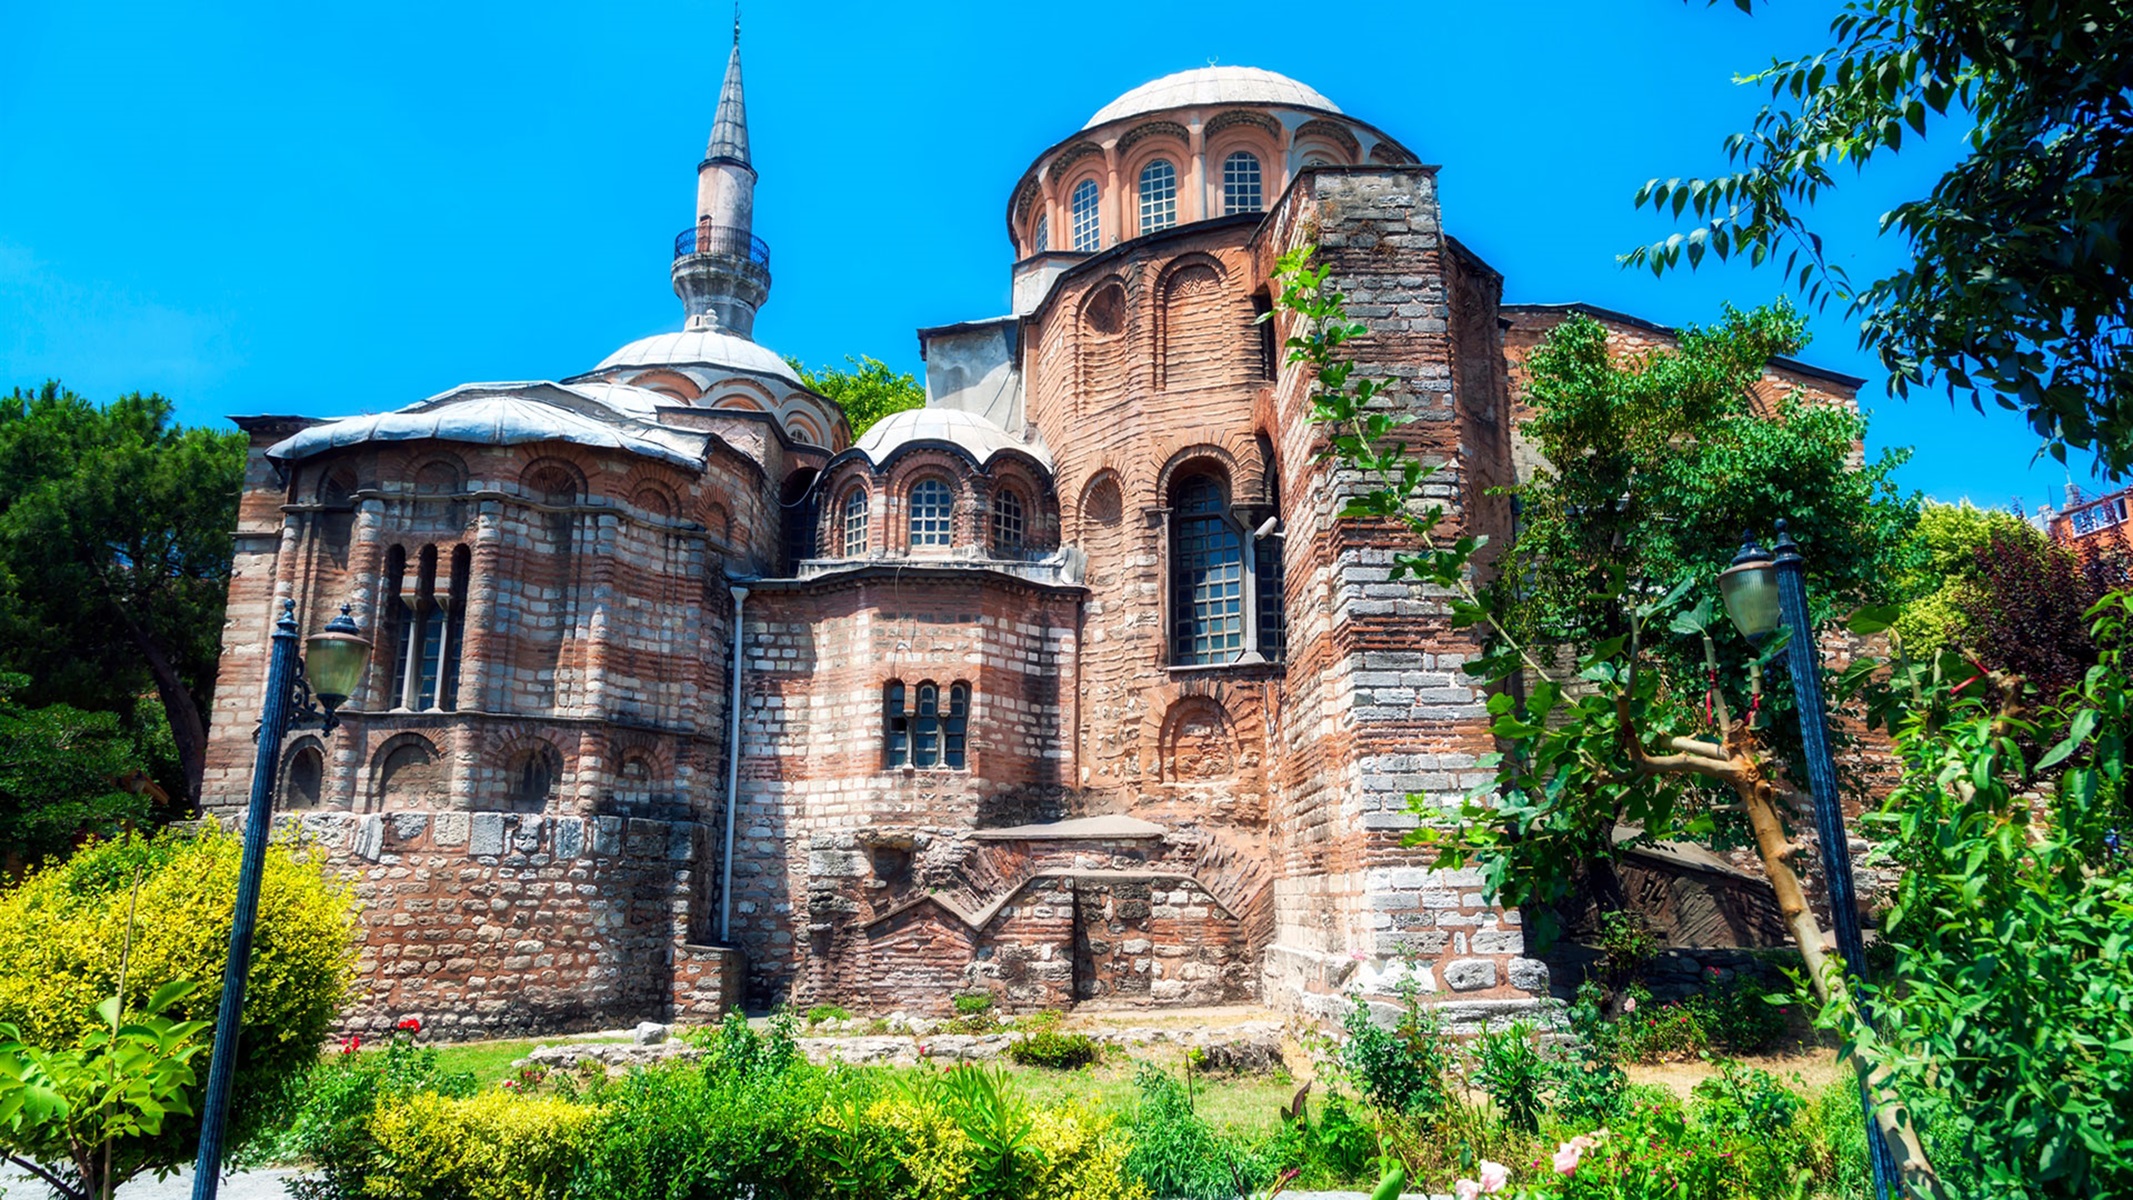 τουρκία: με απόφαση ερντογάν η ιστορική βυζαντινή μονή της χώρας θα λειτουργεί ως τζαμί